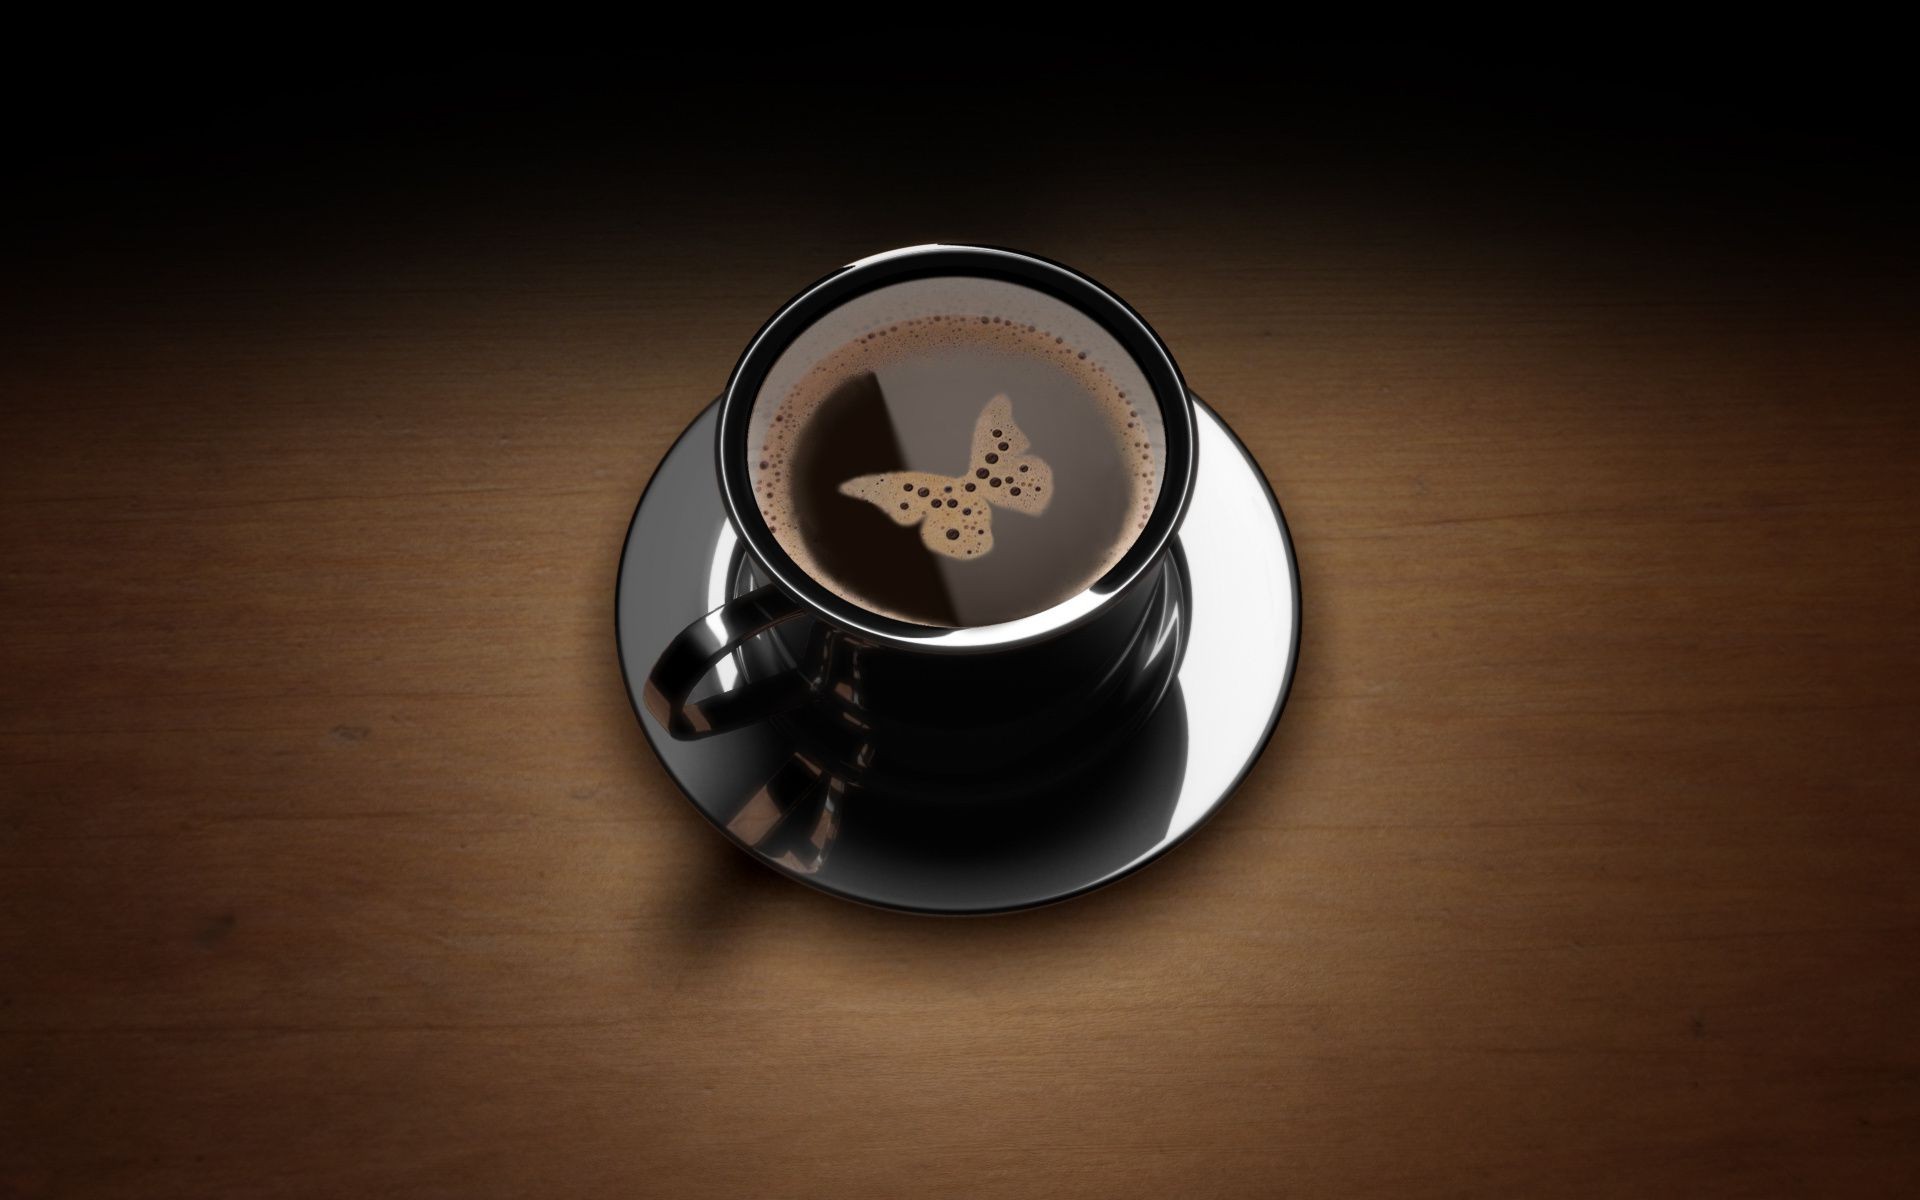 предметы кофе пить эспрессо рассвет кубок кофеин горячая капучино кружка завтрак натюрморт темный блюдце еда чай чашка кофе